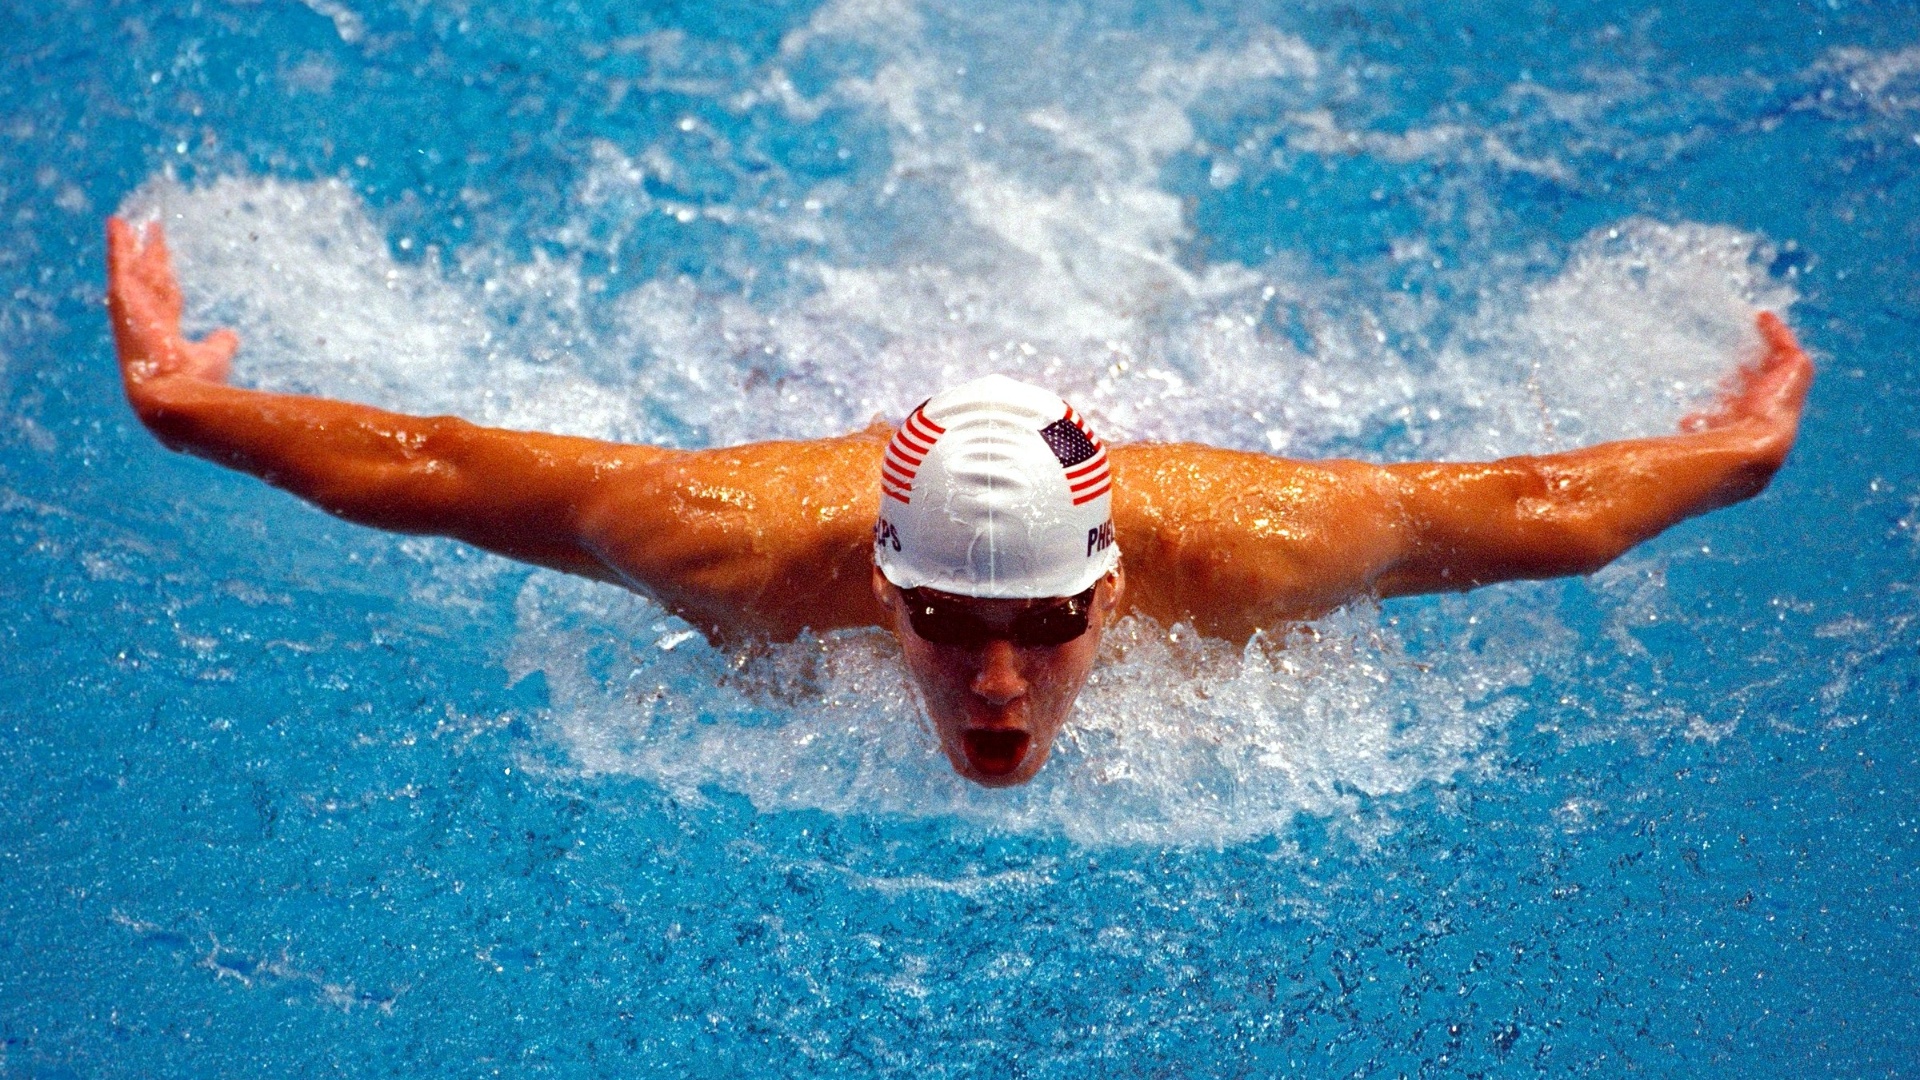 Michael Phelps em sua primeira vez nos Jogos Olímpicos, nas eliminatórias dos 200m borboleta em Sydney-2000